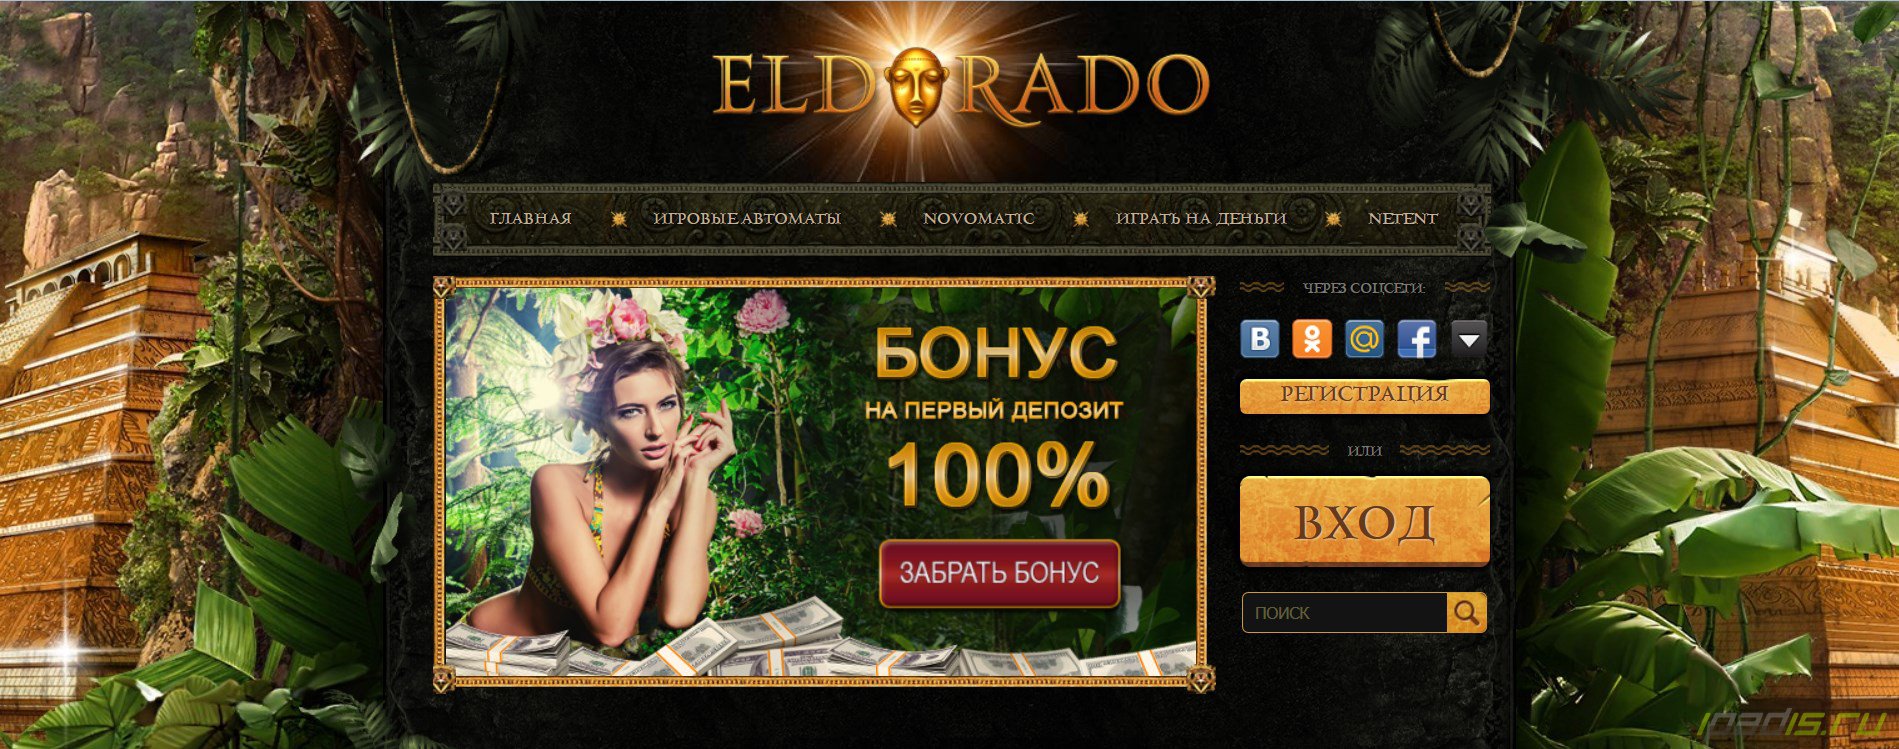 Почему лучше всего развлекаться в Eldorado casino